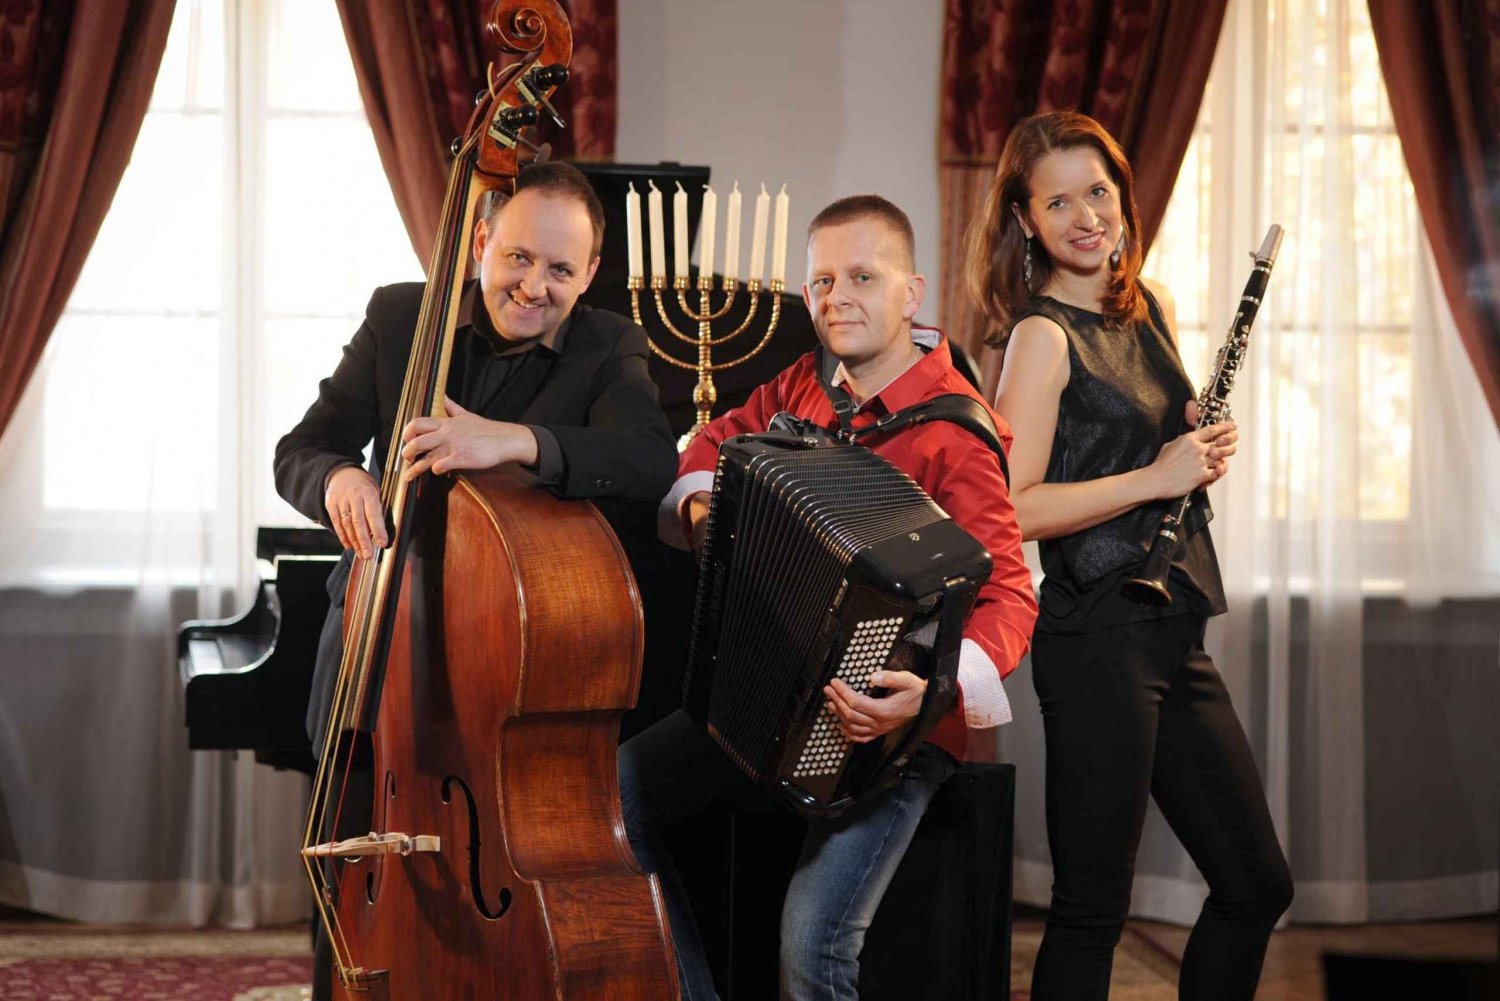 Krakau: Joods muziekconcert Klezmer